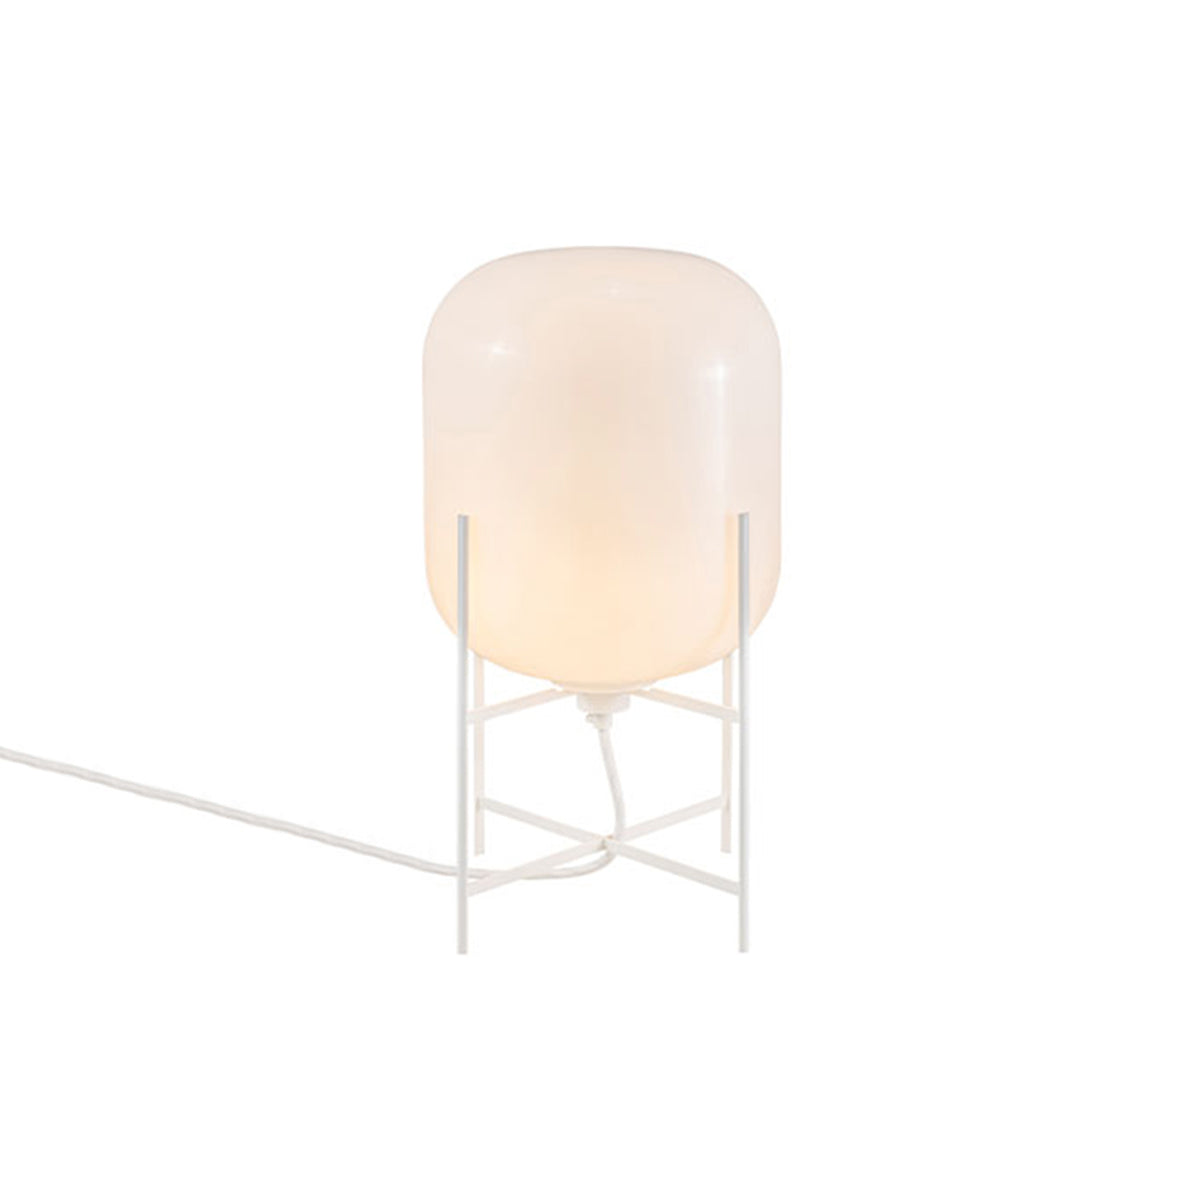 Oda Table Lamp: White + White